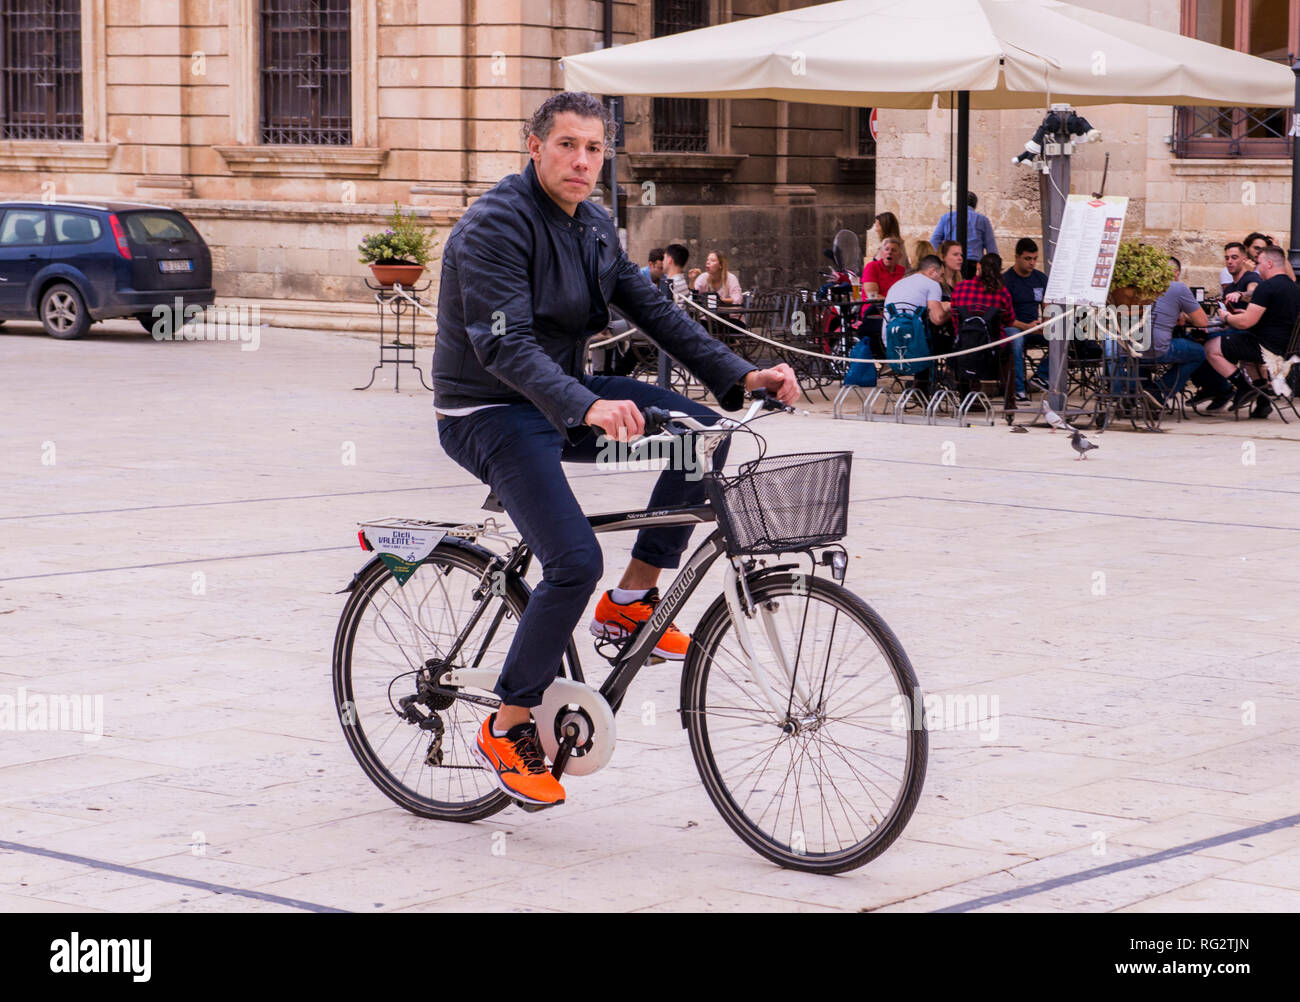 Portrait d'un homme à bicyclette, randonnée à vélo sur la rue, groupe de personnes assises à l'extérieur de cafe en arrière-plan, Ortigia, Syracuse, Sicile, Italie, Europe Banque D'Images